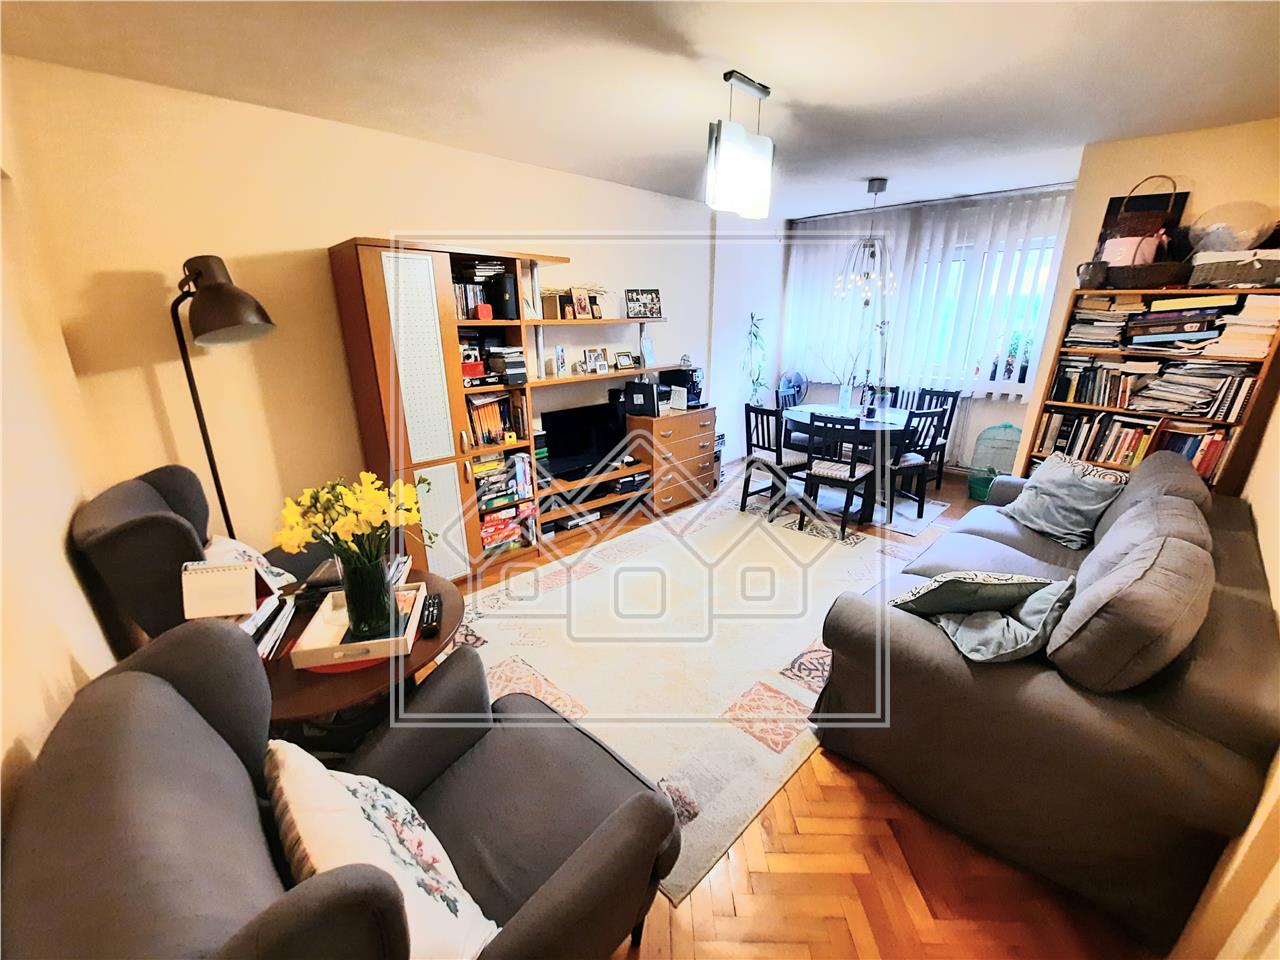 Apartment for sale in Alba Iulia - 4 rooms - Cetate area